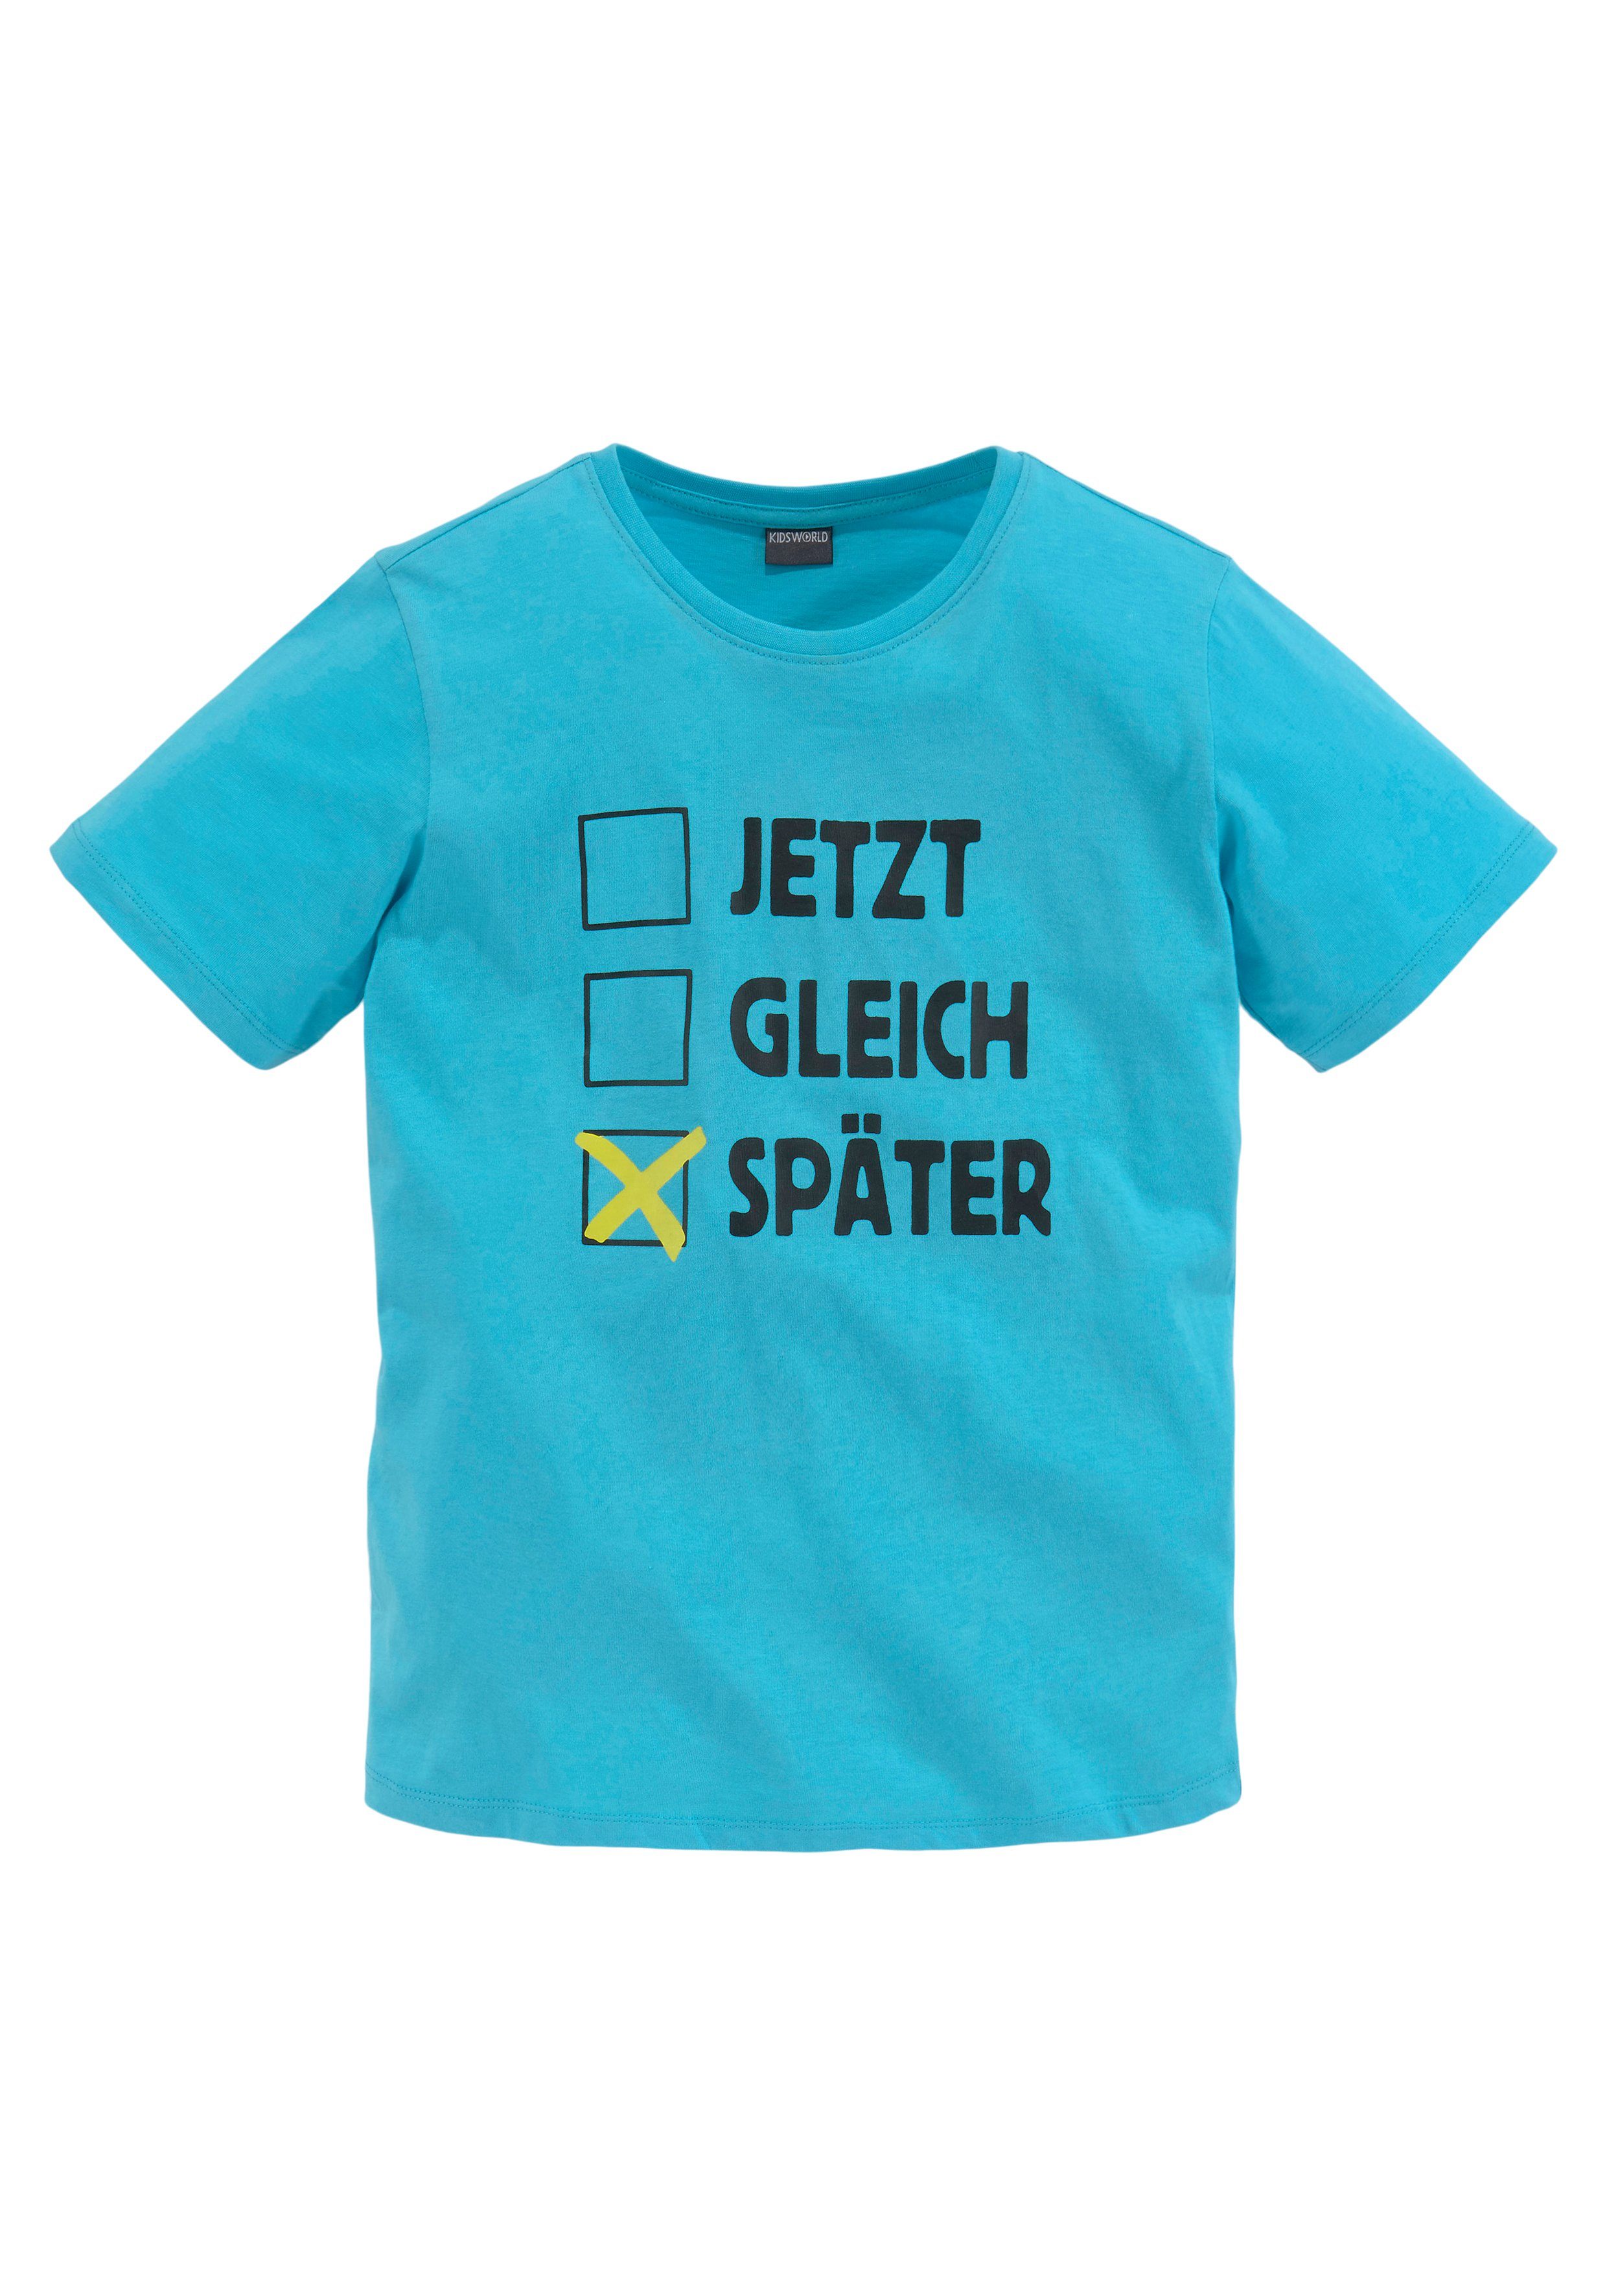 SPÄTER, T-Shirt Spruch KIDSWORLD